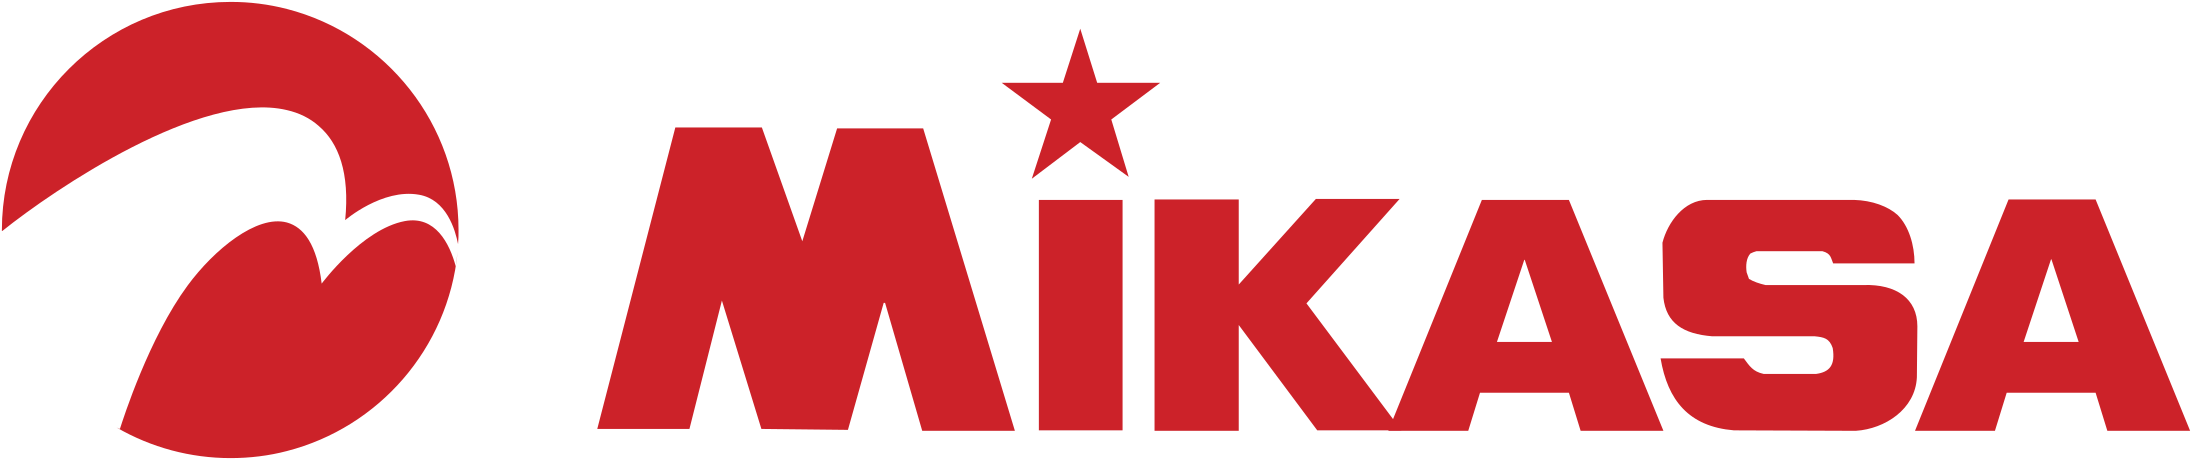 Mikasa Volleyball Logo PNG